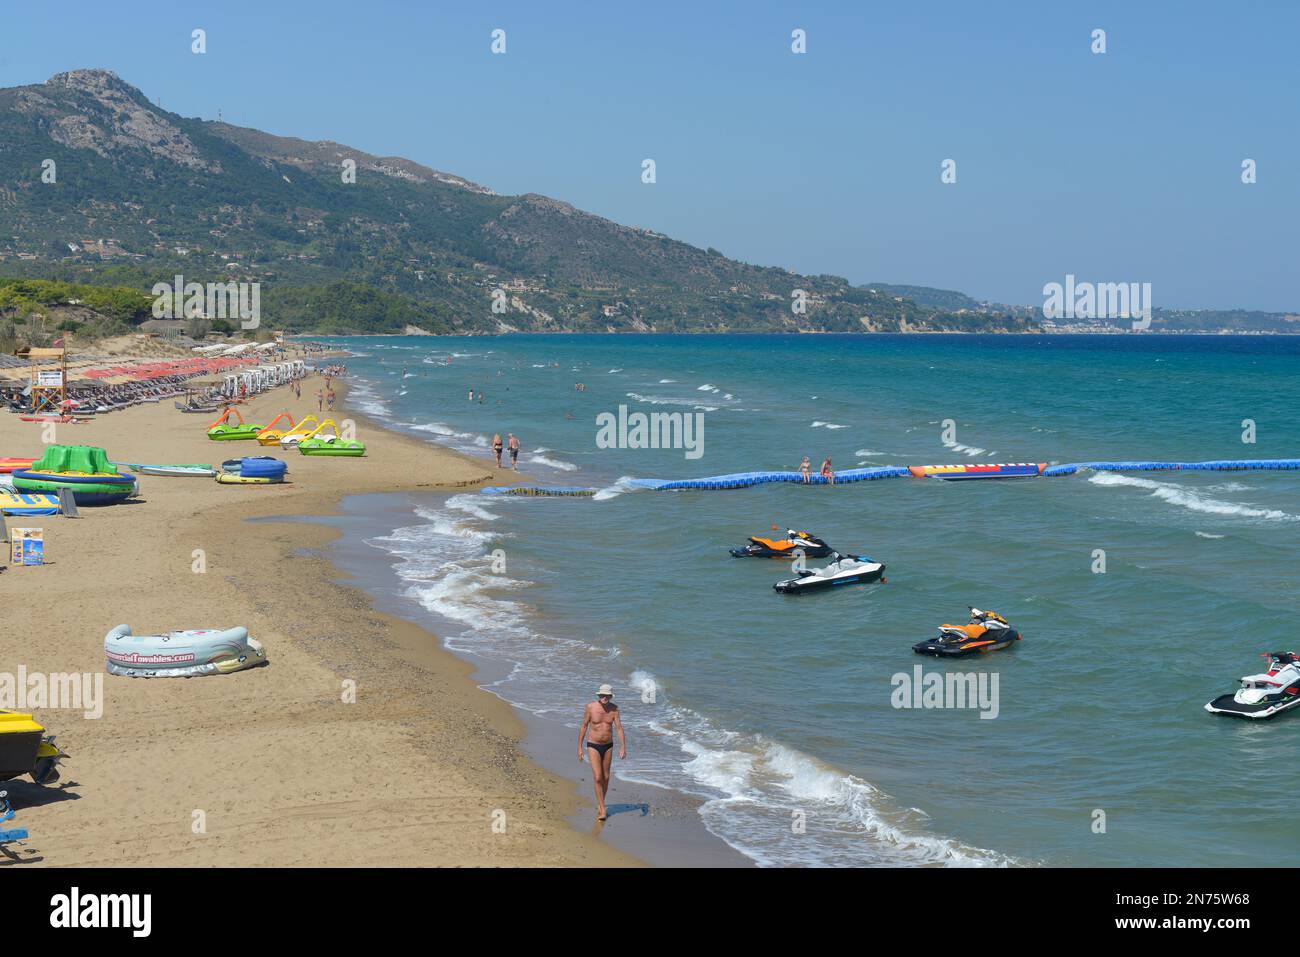 Vue sur la plage de Banana, l'île de Zakynthos, les îles Ioniennes, la mer Méditerranée, la Grèce Banque D'Images